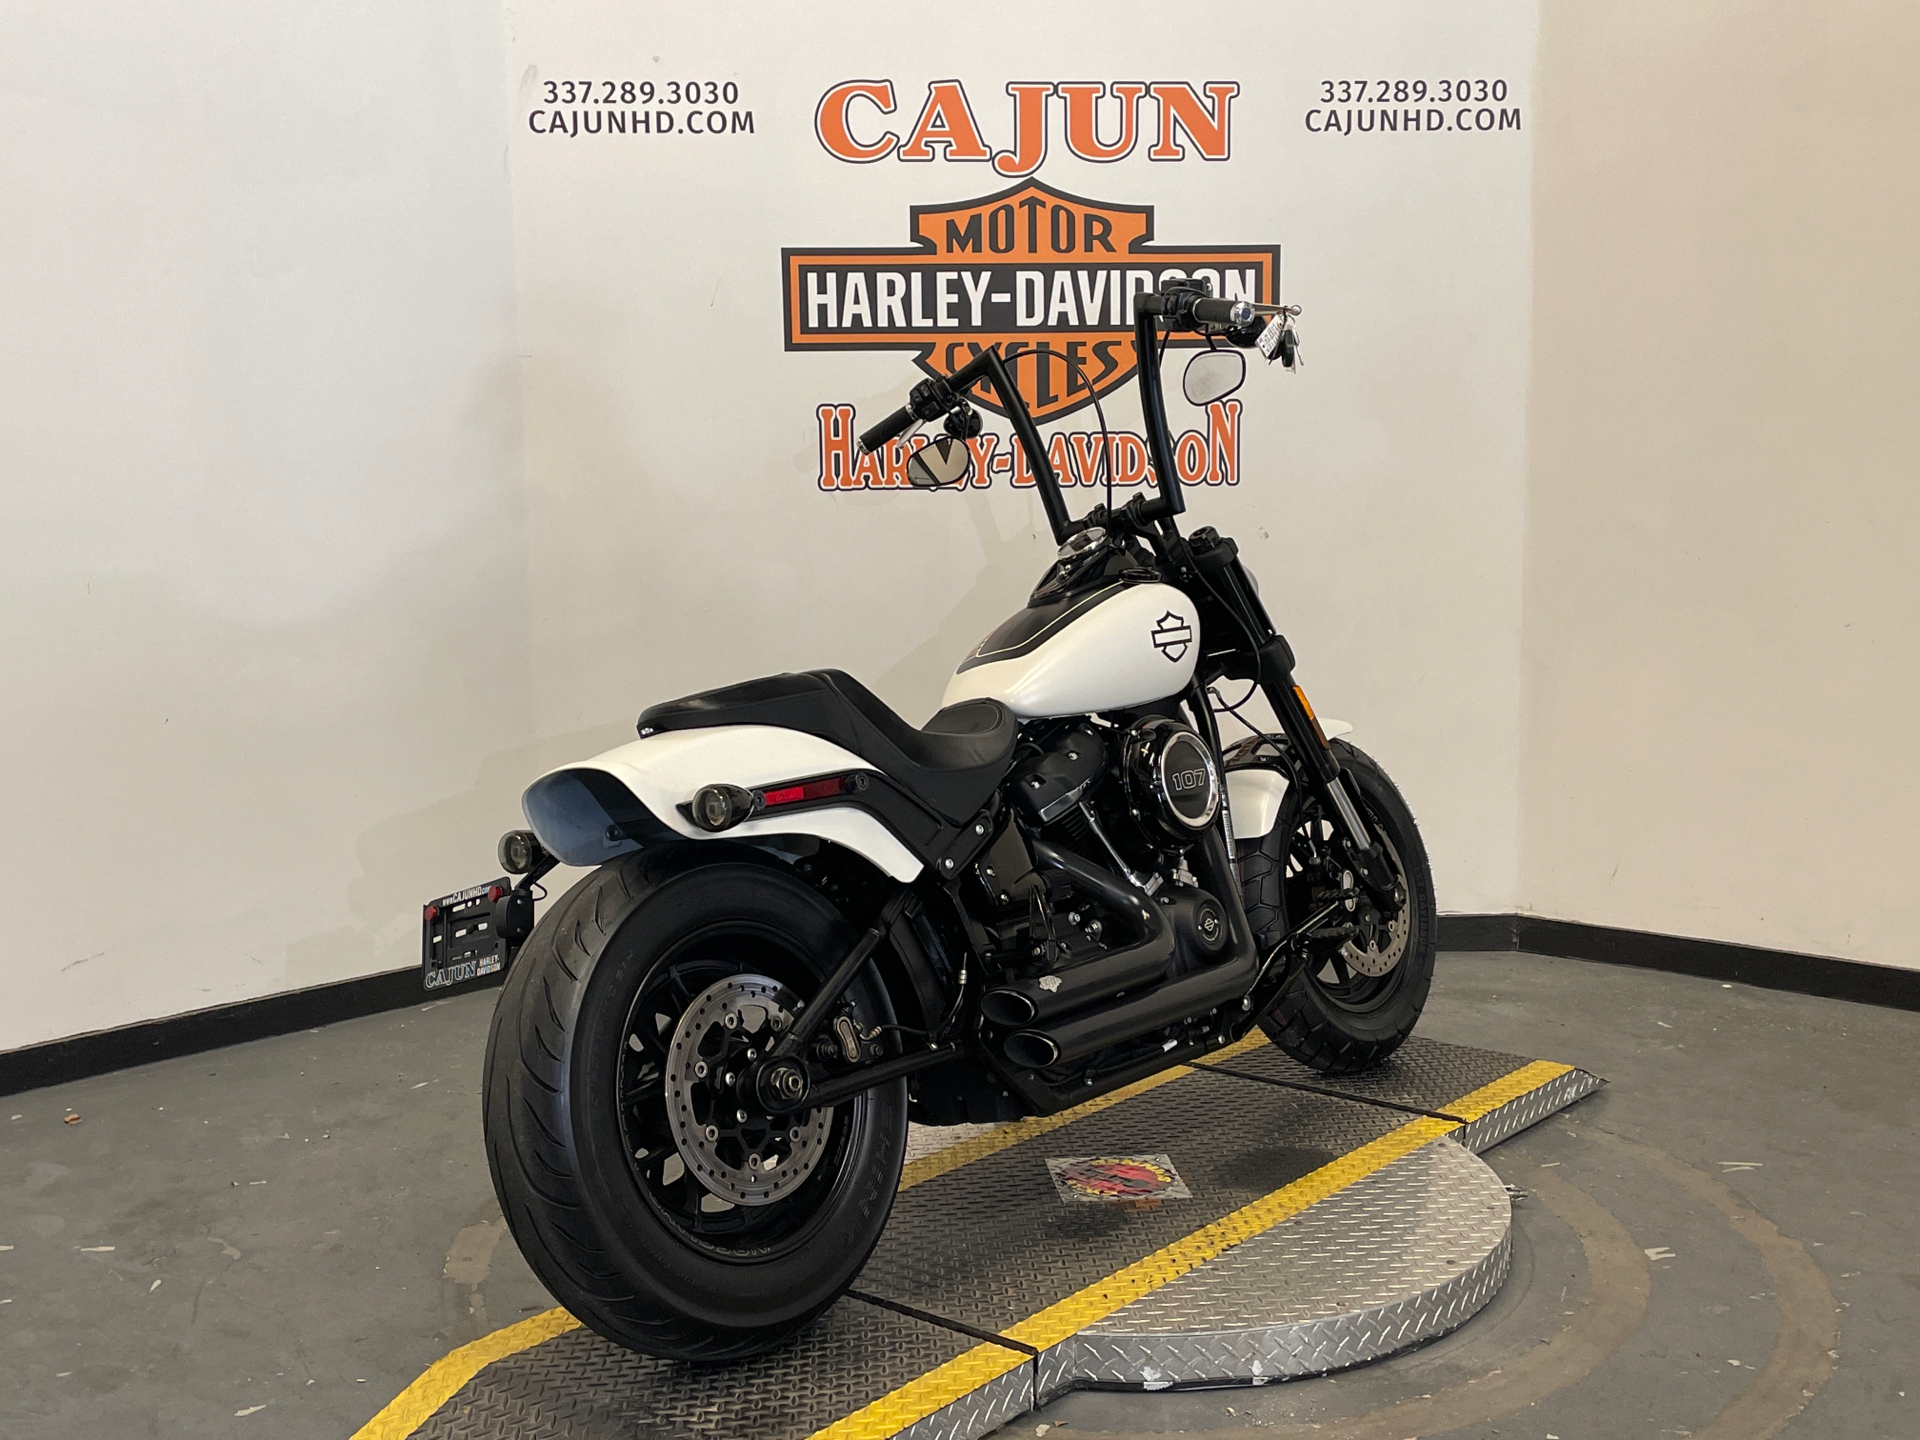 2018 Harley-Davidson Fat Boy for sale - Photo 6